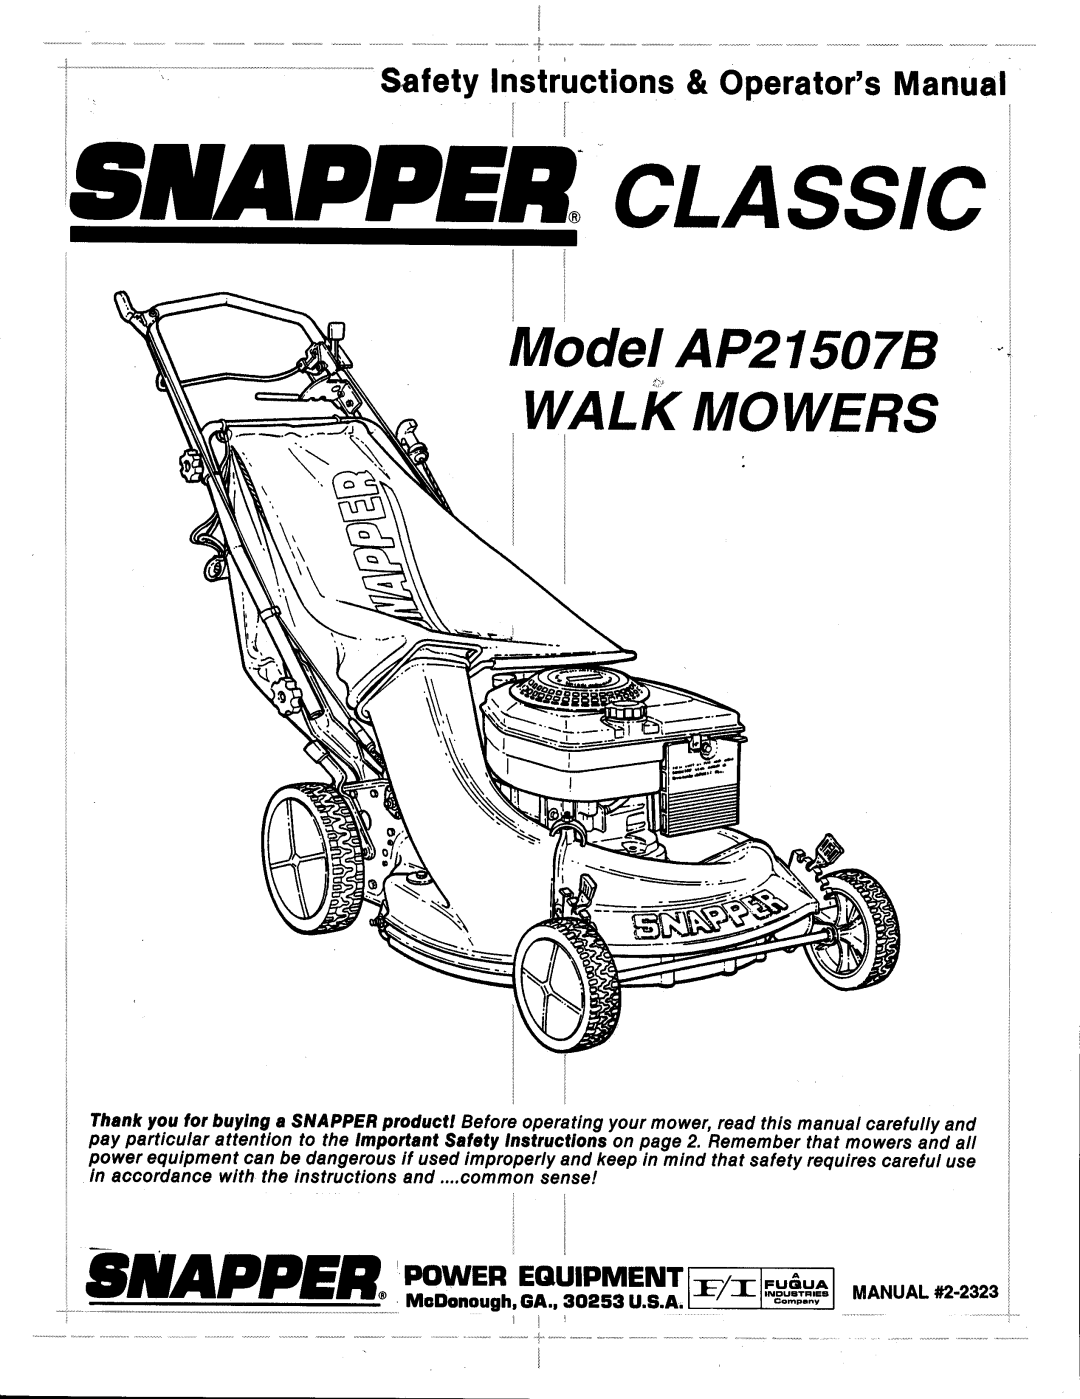 Snapper AP21507B manual 